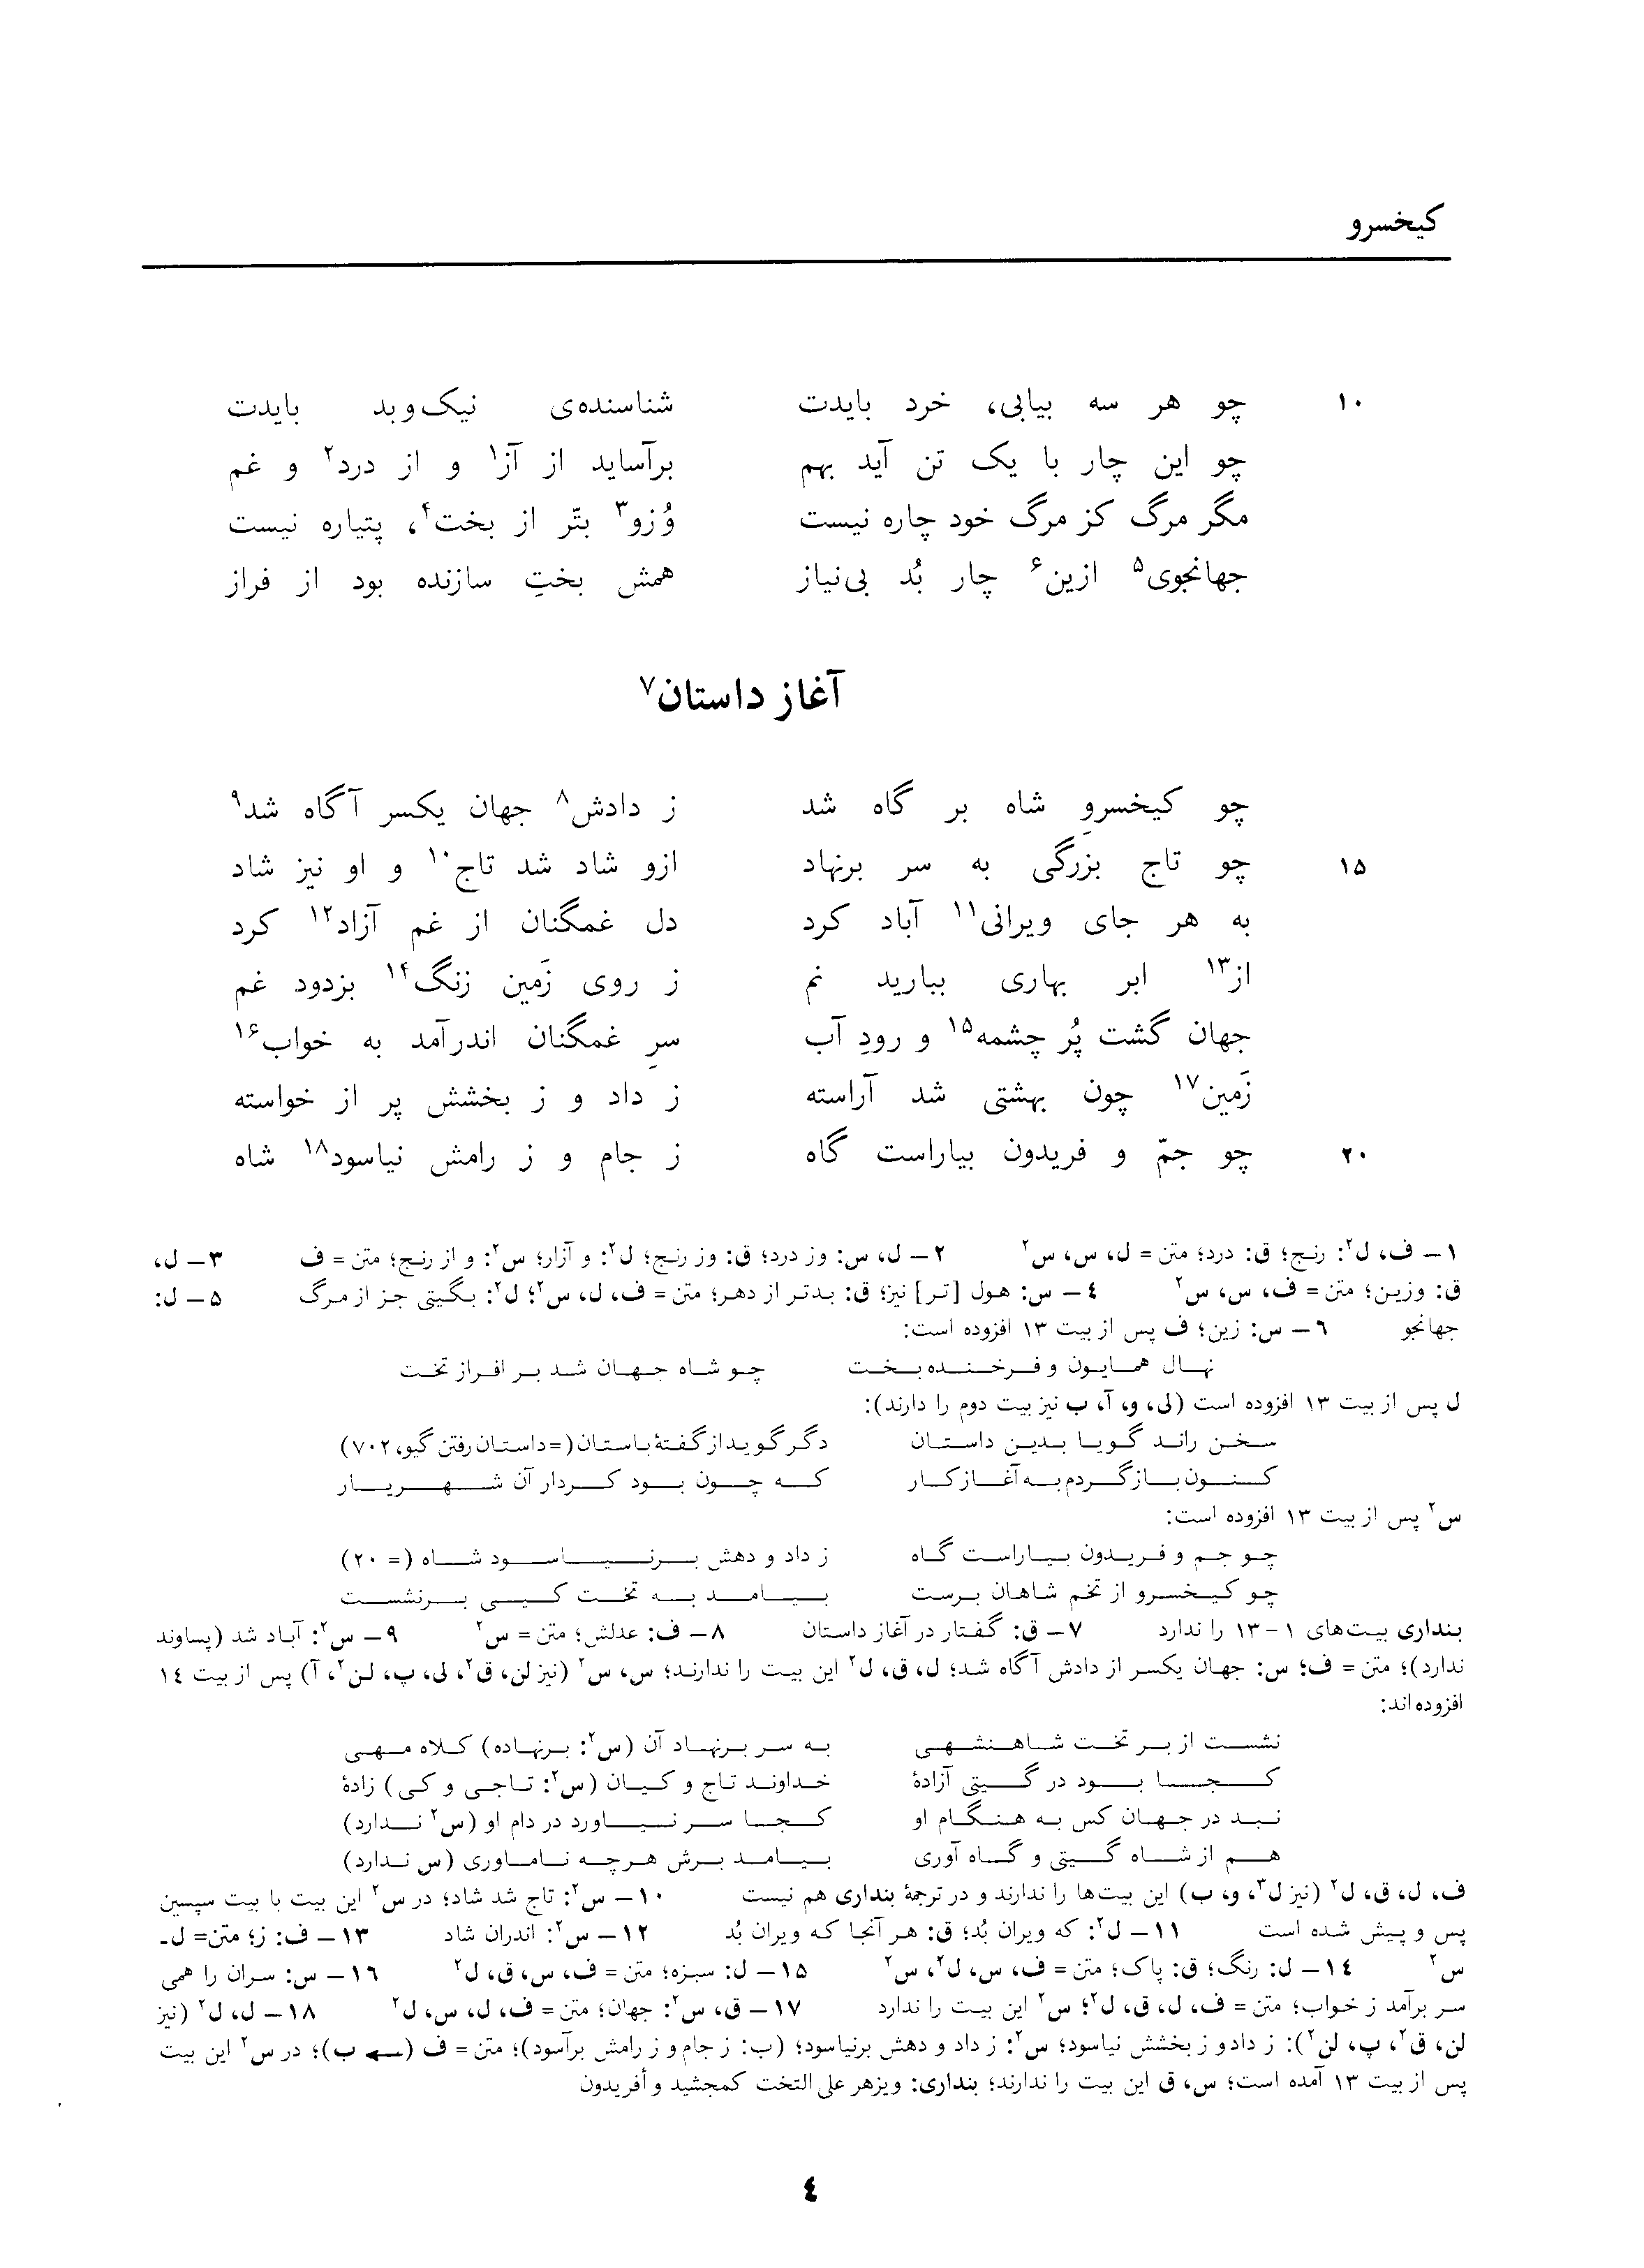 vol. 3, p. 4